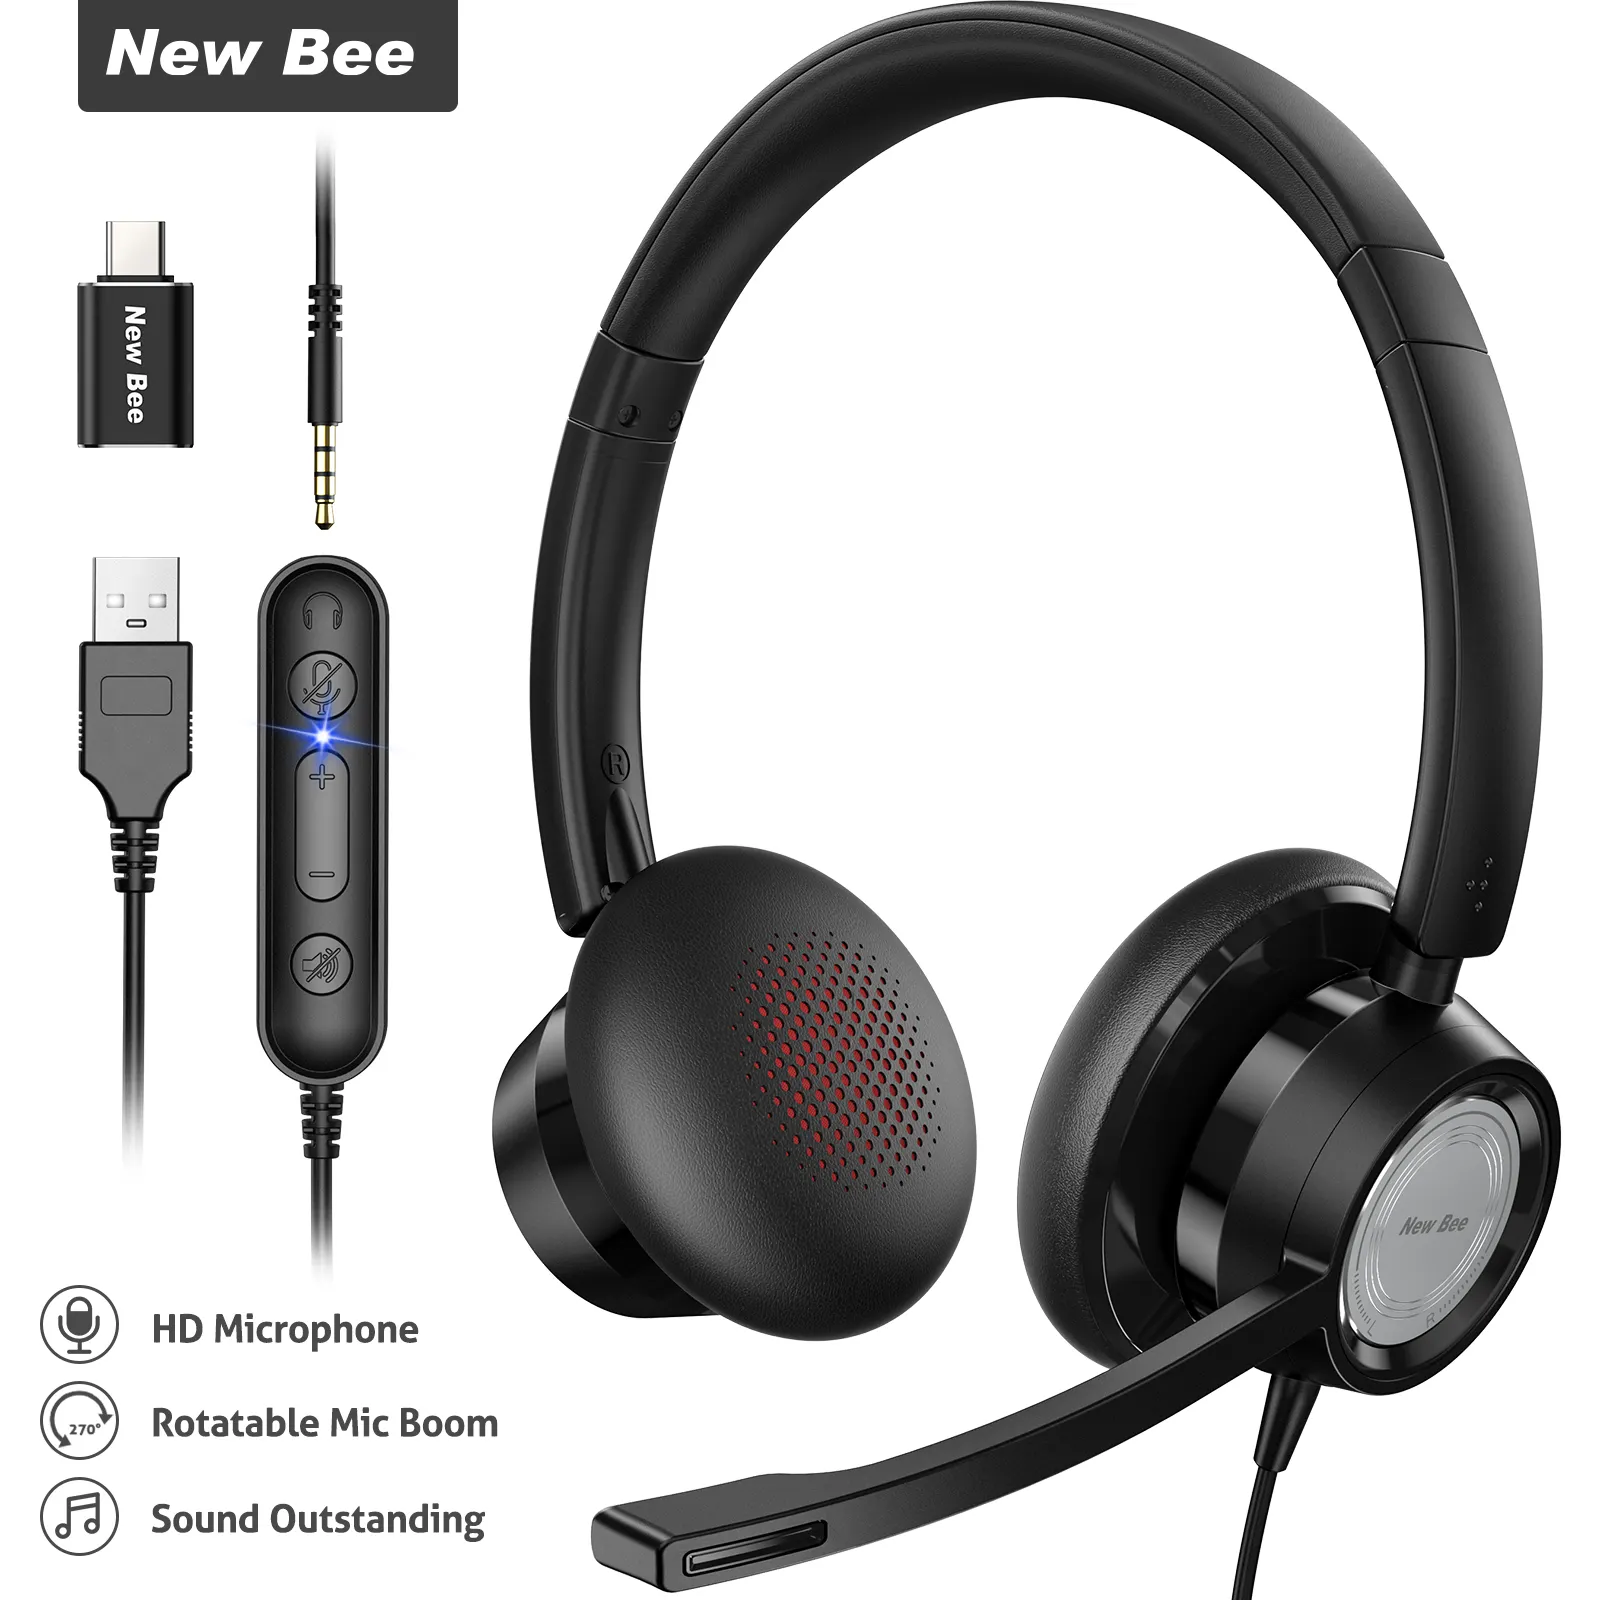 New Bee Gute Qualität Rausch unterdrückung USB-Computer-Headset Kopfhörer Kabel gebundenes Headset mit Mikrofon